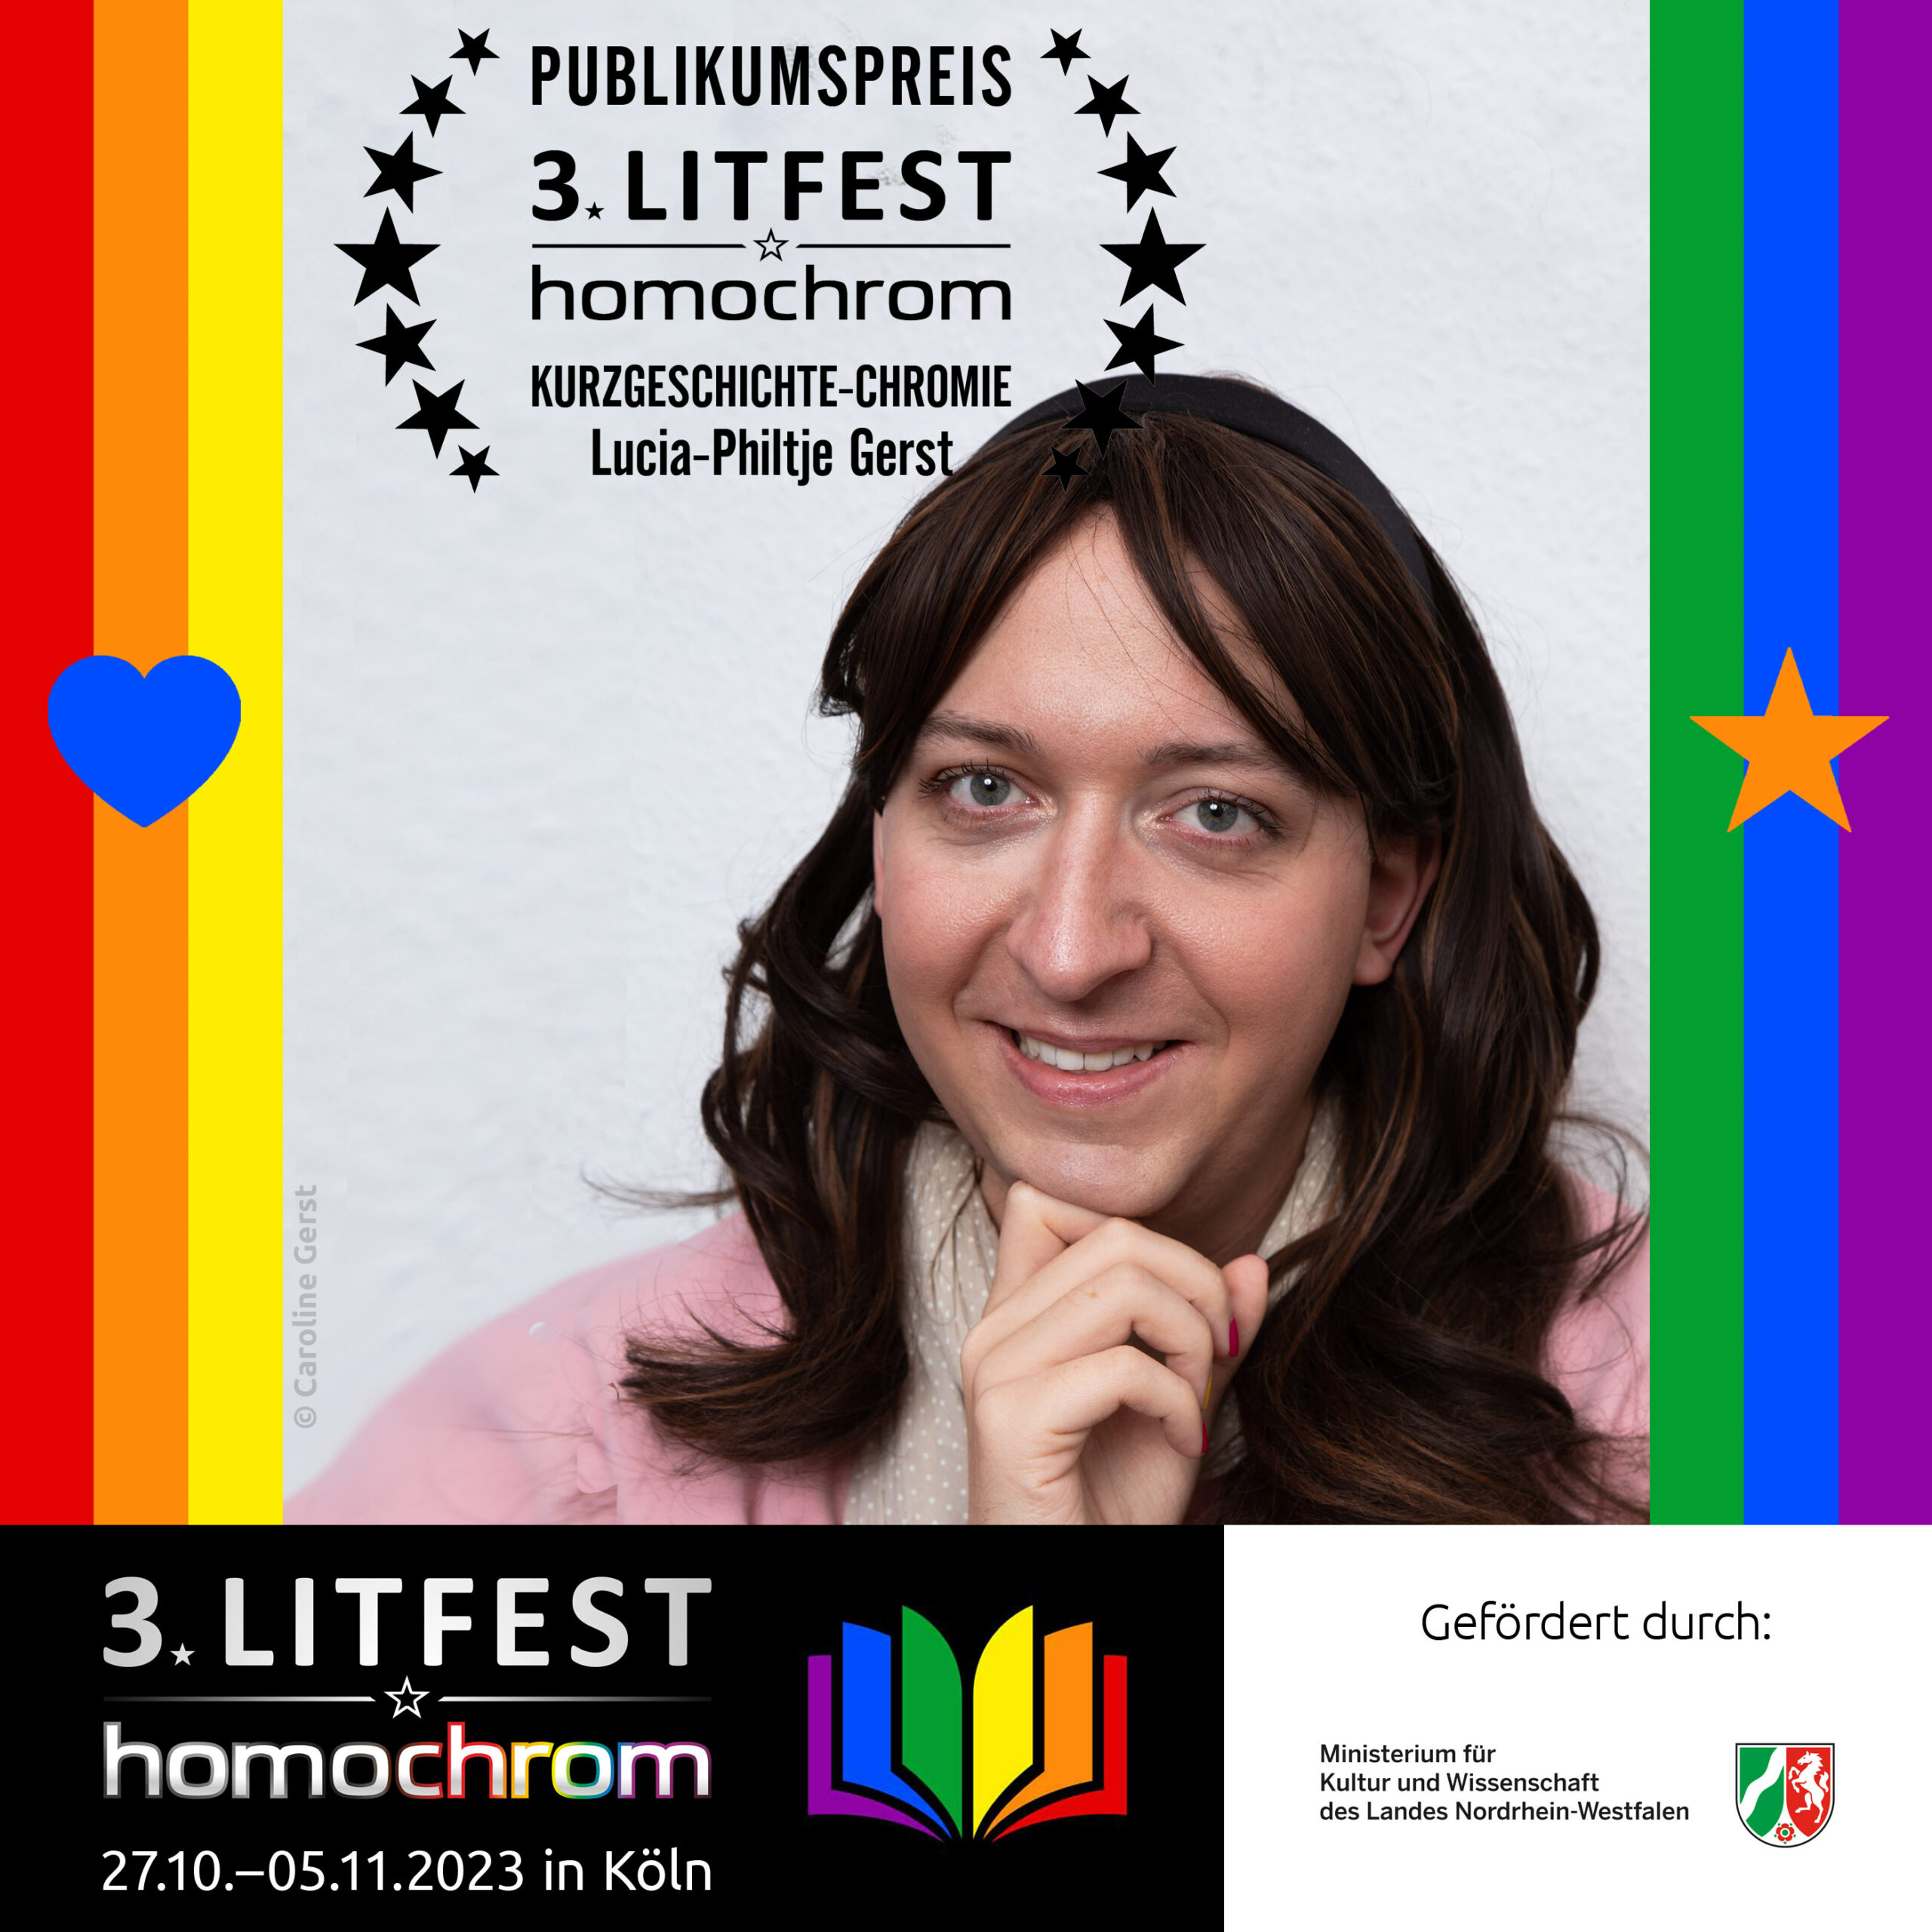 Kurzgeschichten-Chromie, Lucia-Philtje Gerst, Litfest, homochrom, Literaturfestival, Köln, queer, LGBTIQ, awards, Publikumspreis, literary festival